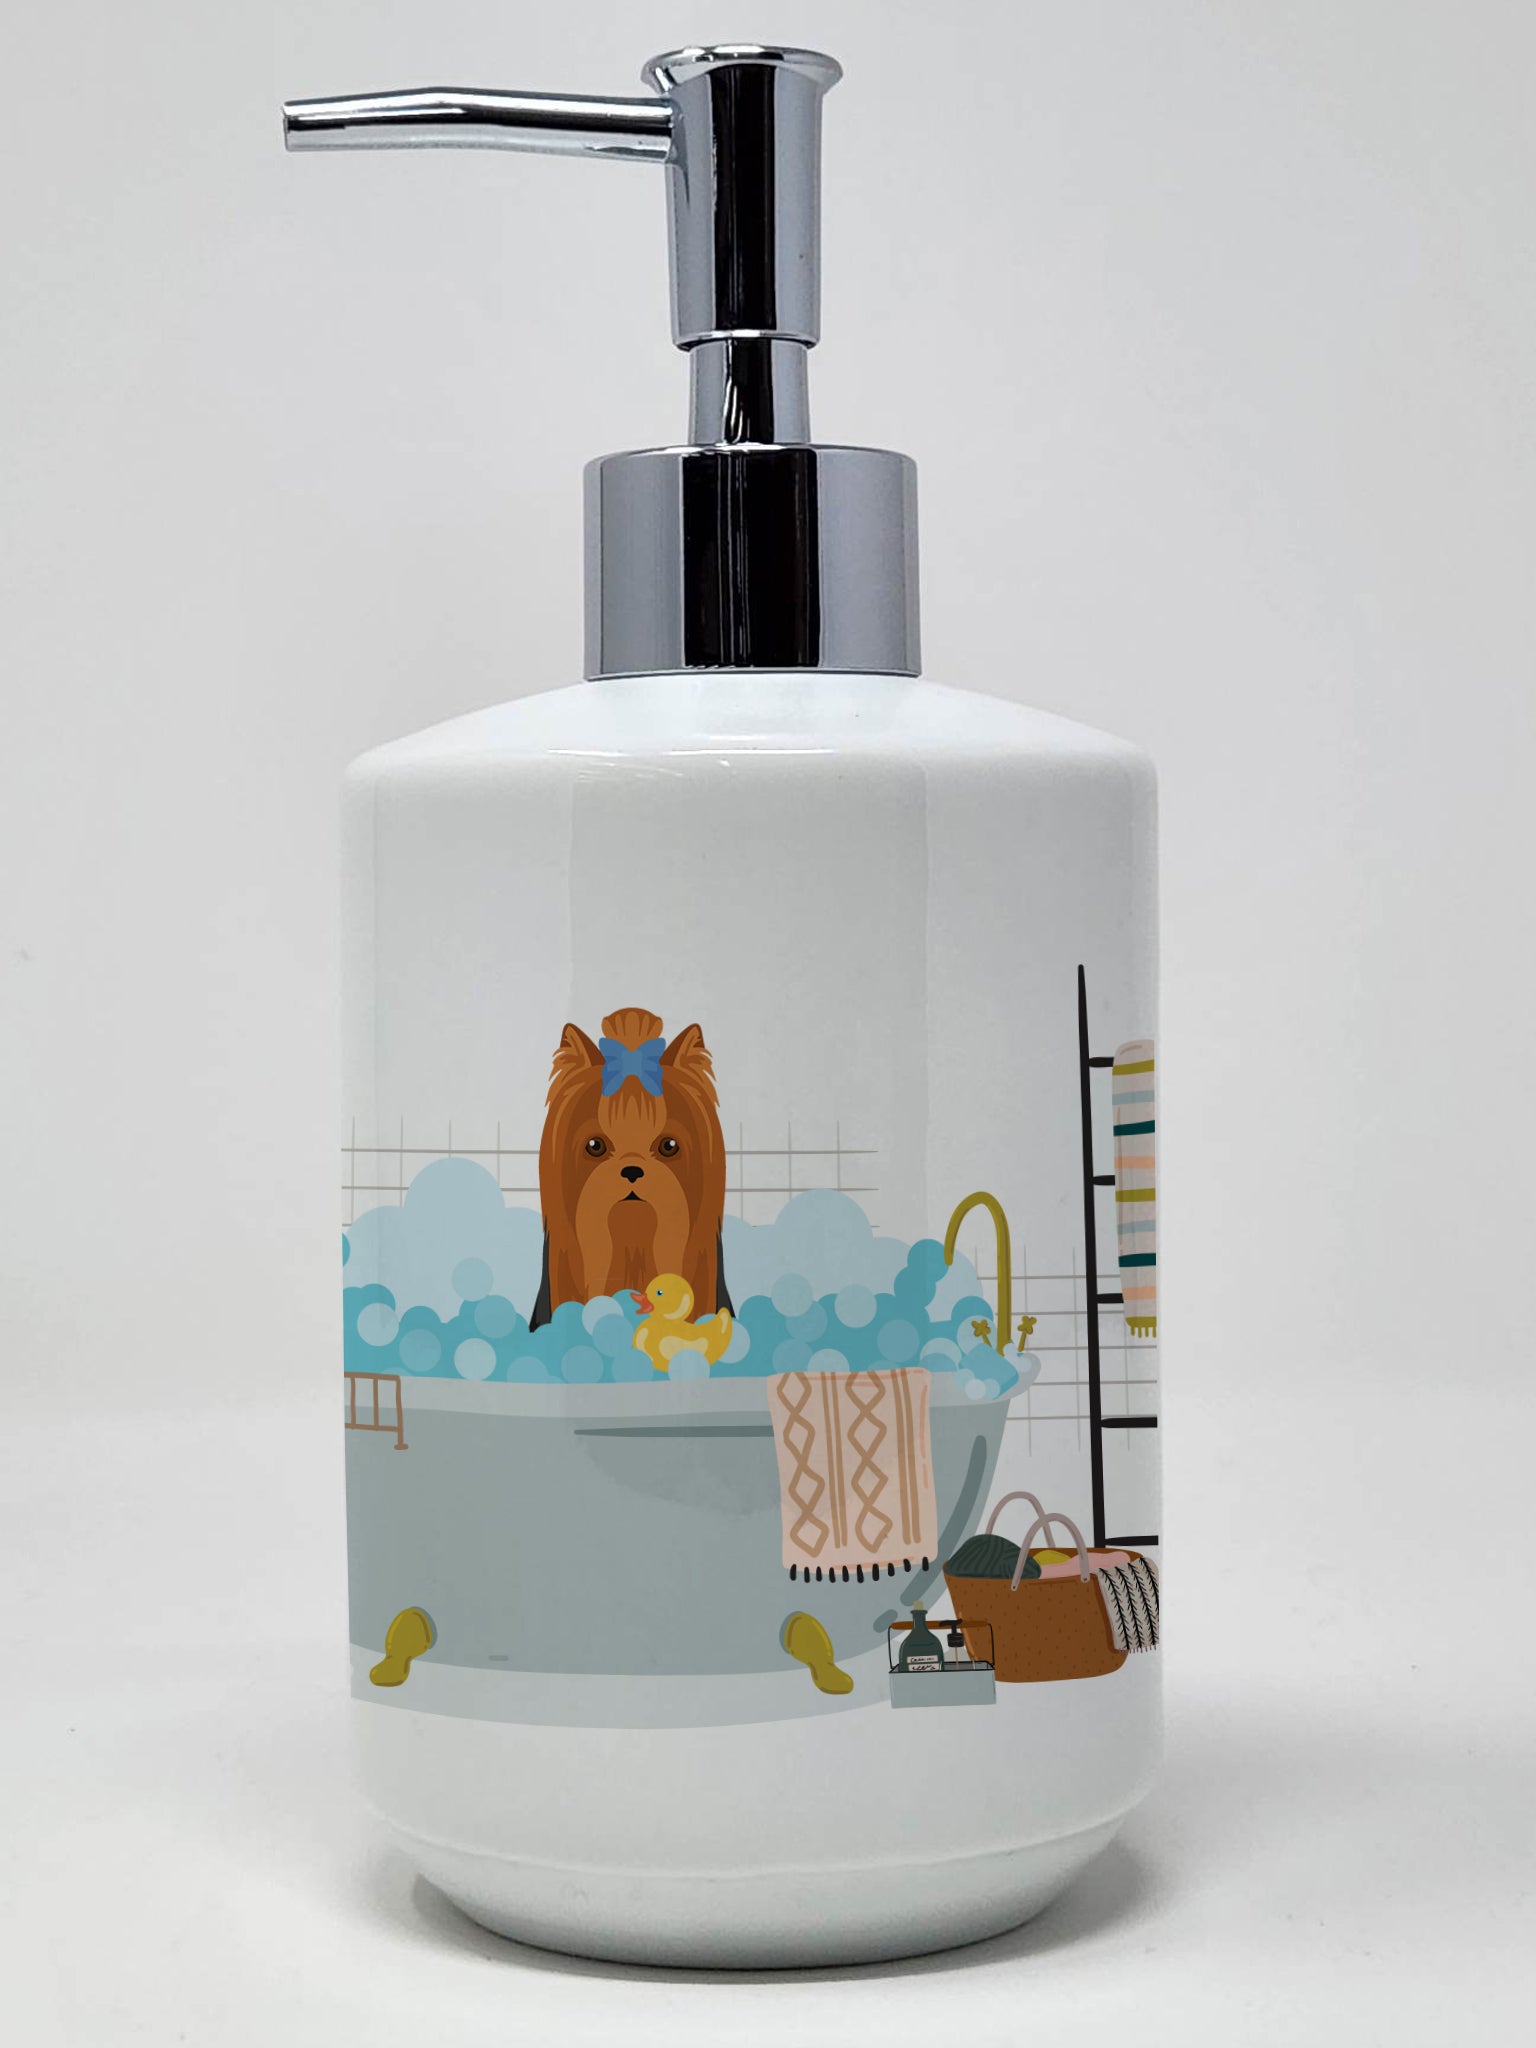 Buy this Black and Tan Full Coat Yorkshire Terrier Ceramic Soap Dispenser